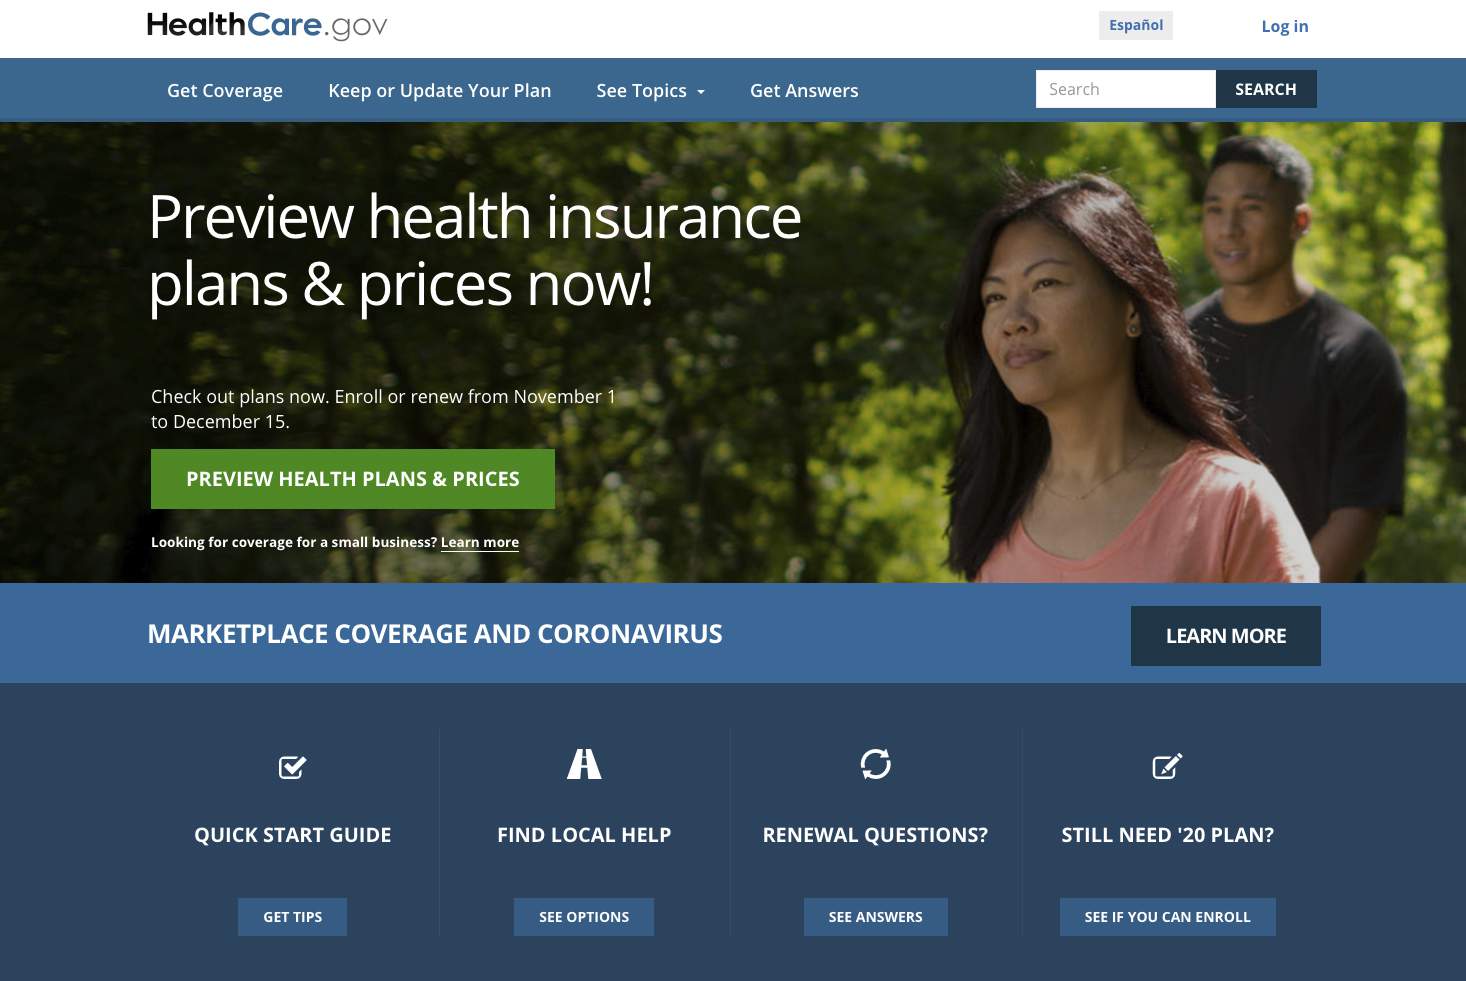 Interest is lively at deadline for 'Obamacare' sign-ups